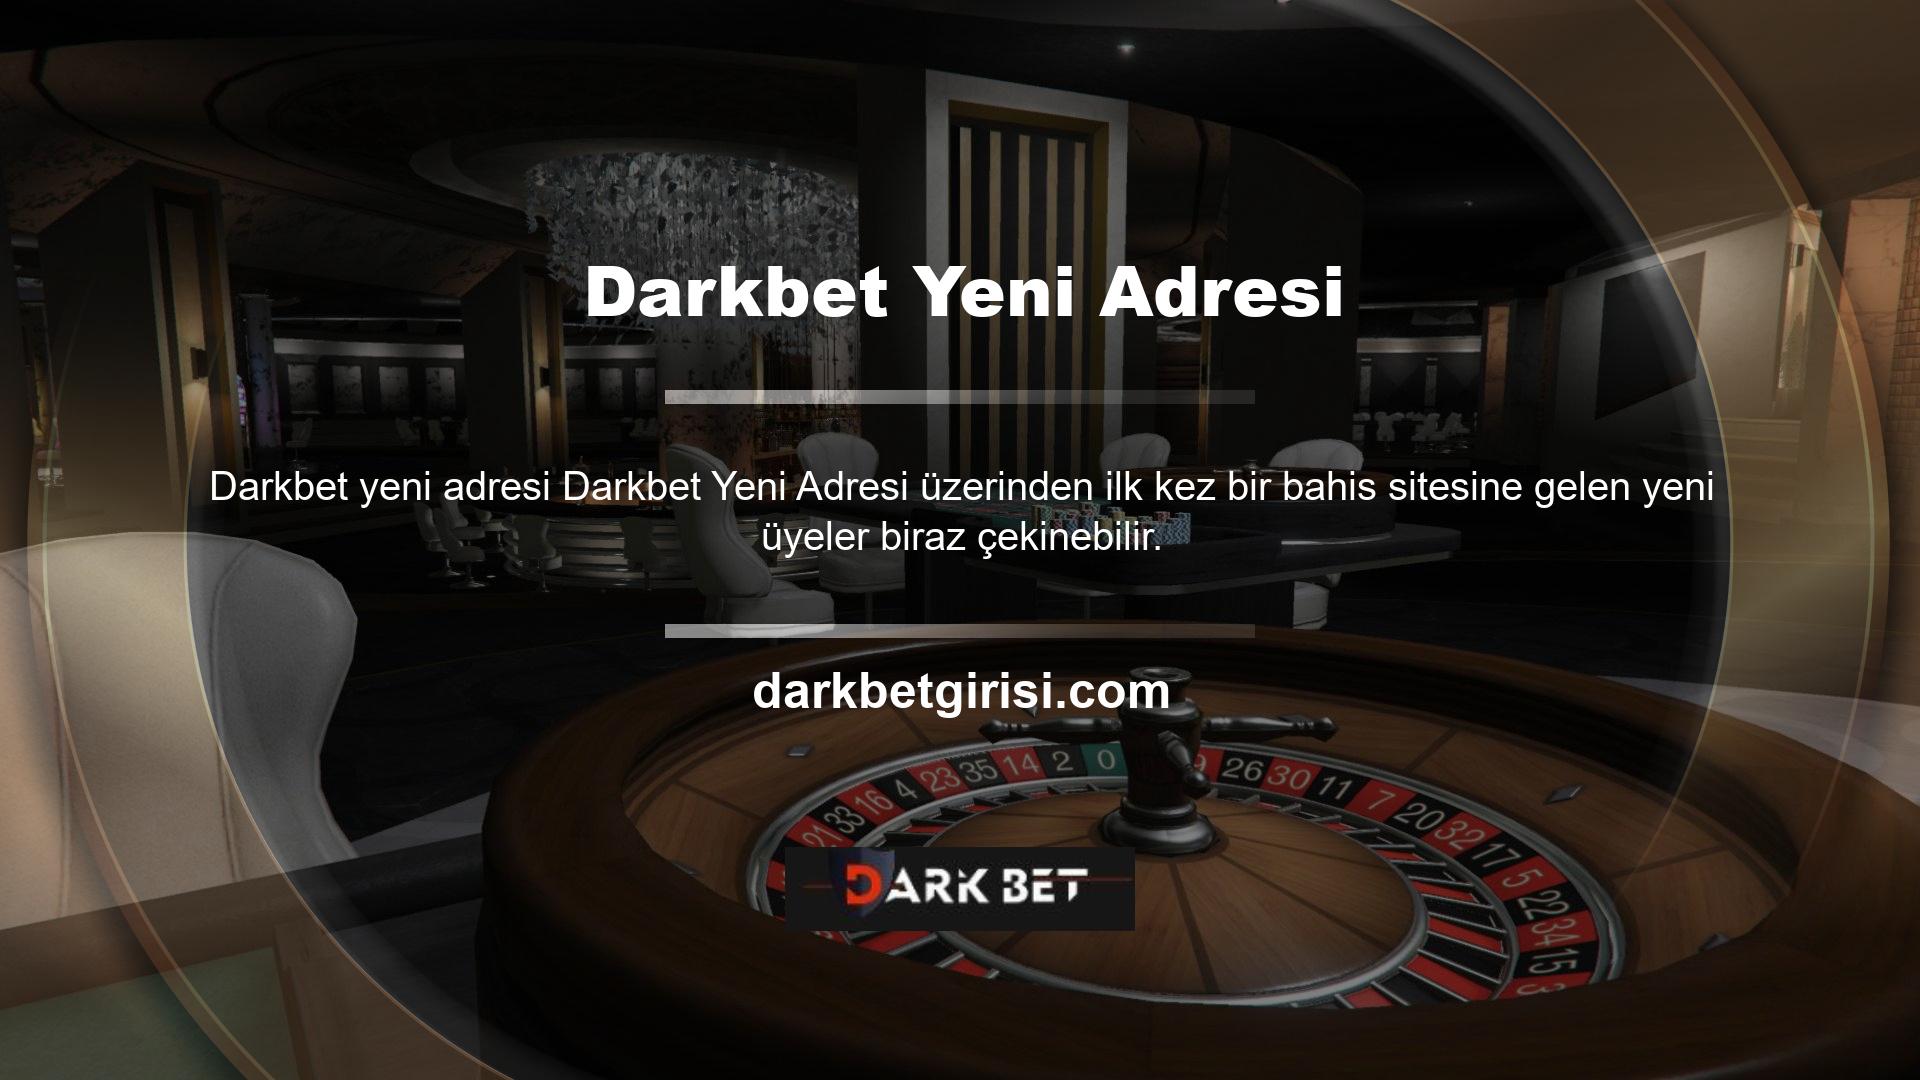 Darkbet yeni adresi  oyunlarına yeni başlayan veya aşina olmayan oyuncular bu durumu rahatsız edebilir